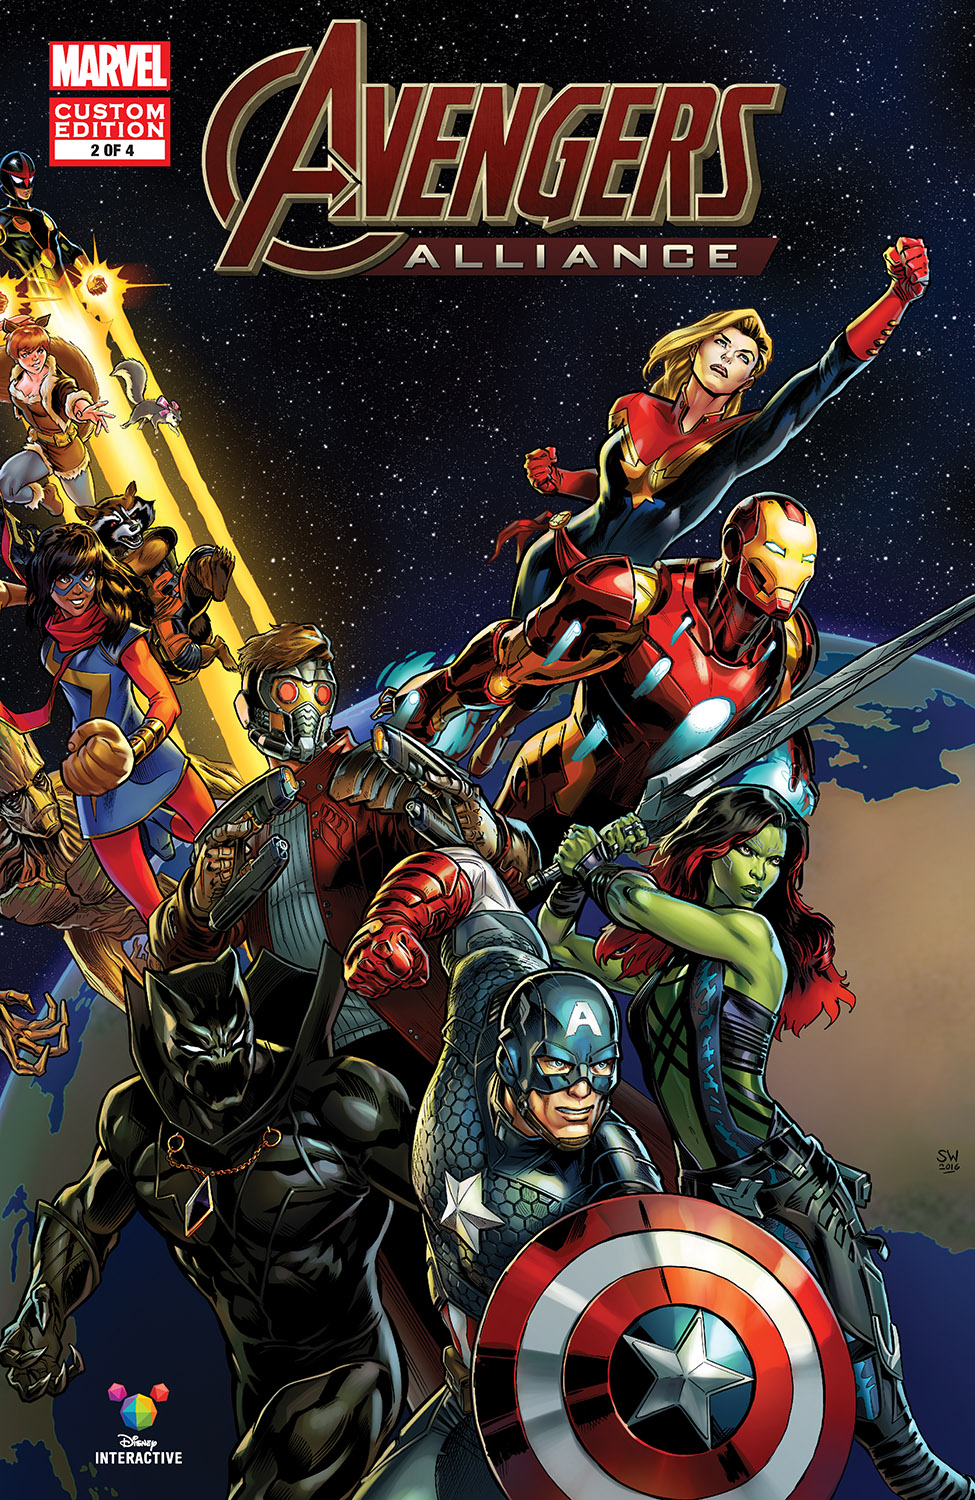 Marvel: Avengers Alliance Vol 1 2 | Marvel Database ...